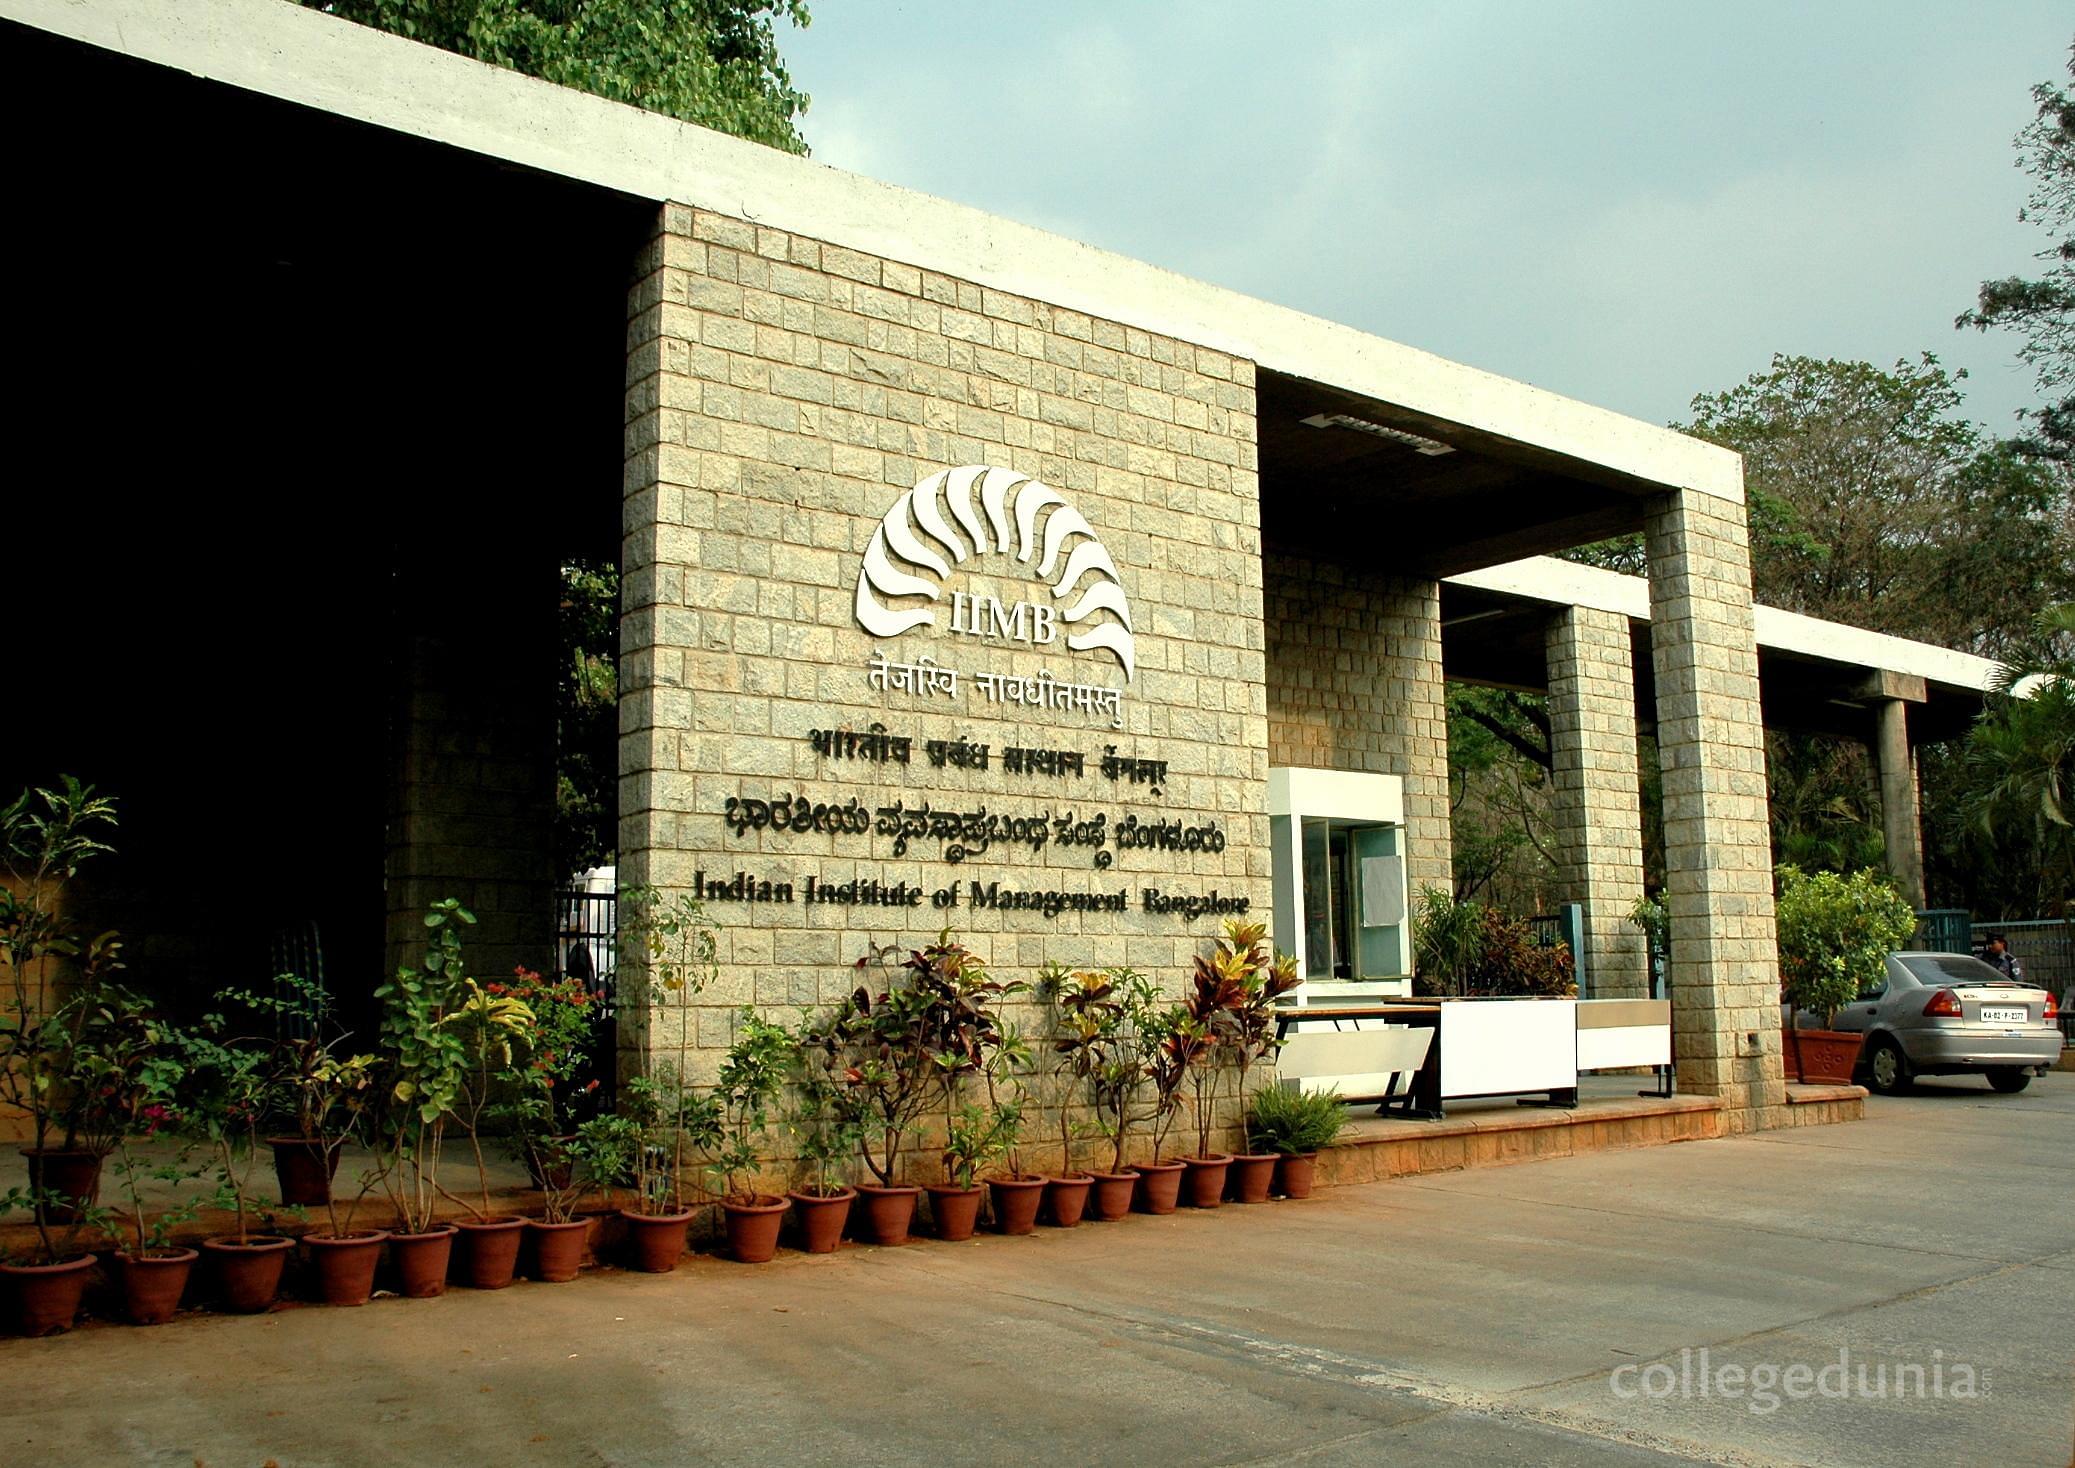 IIM Bangalore - Indian Institute of Management